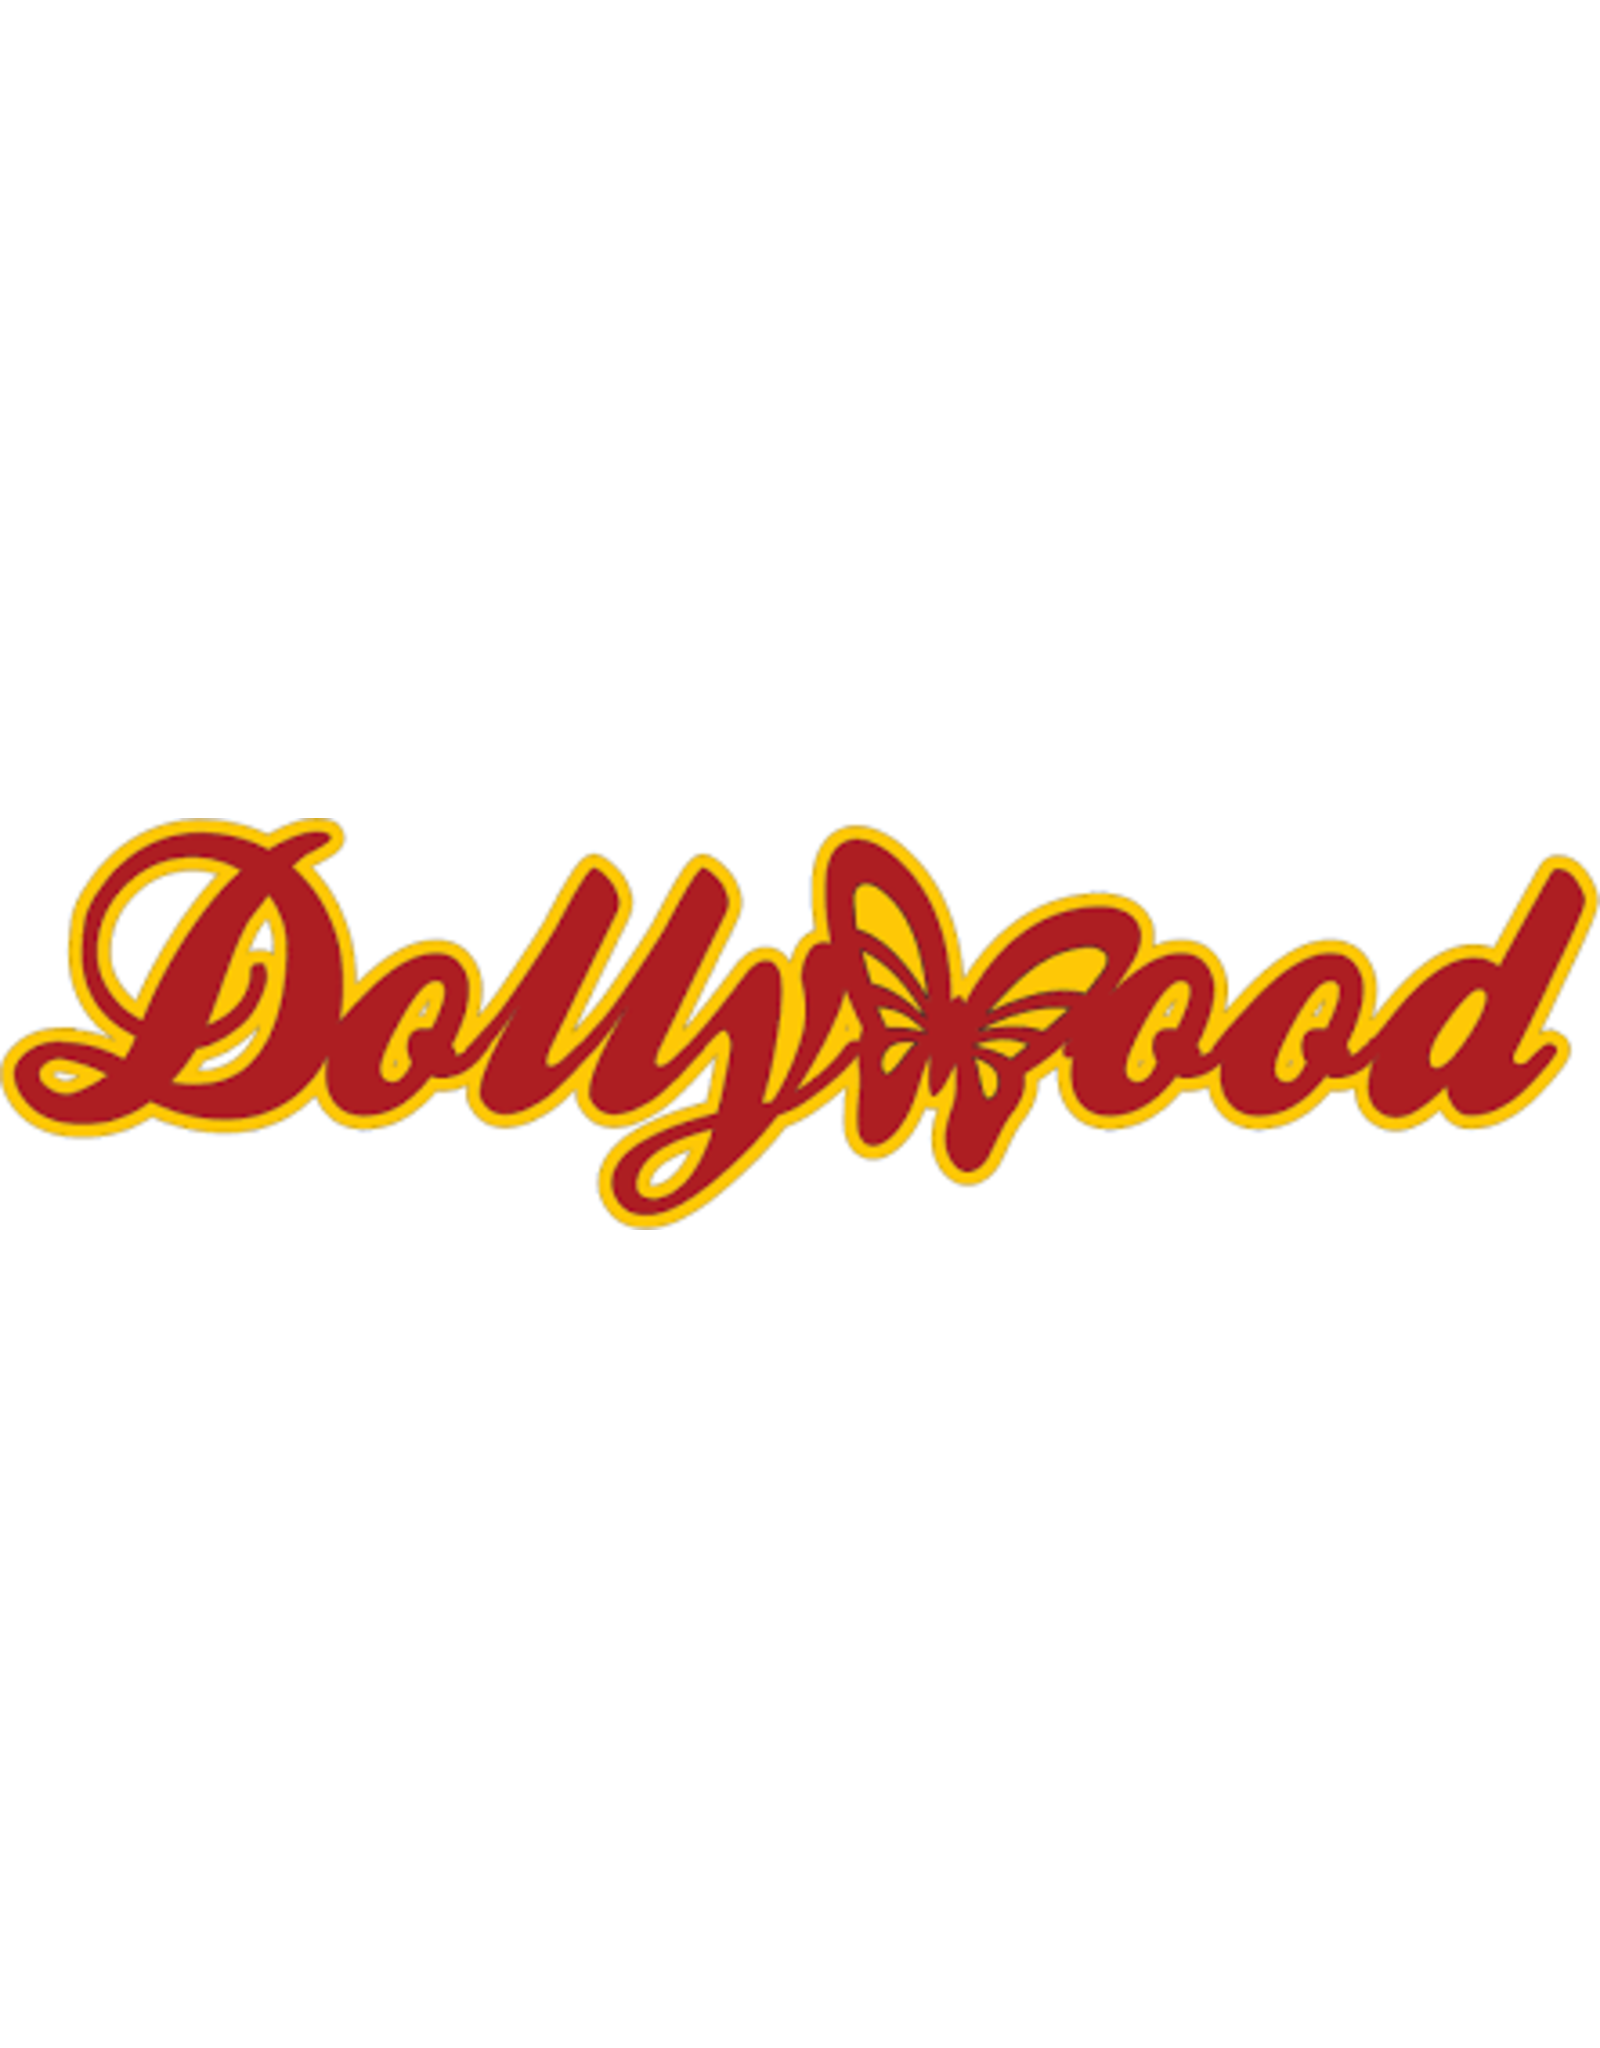 Dollywood Banner